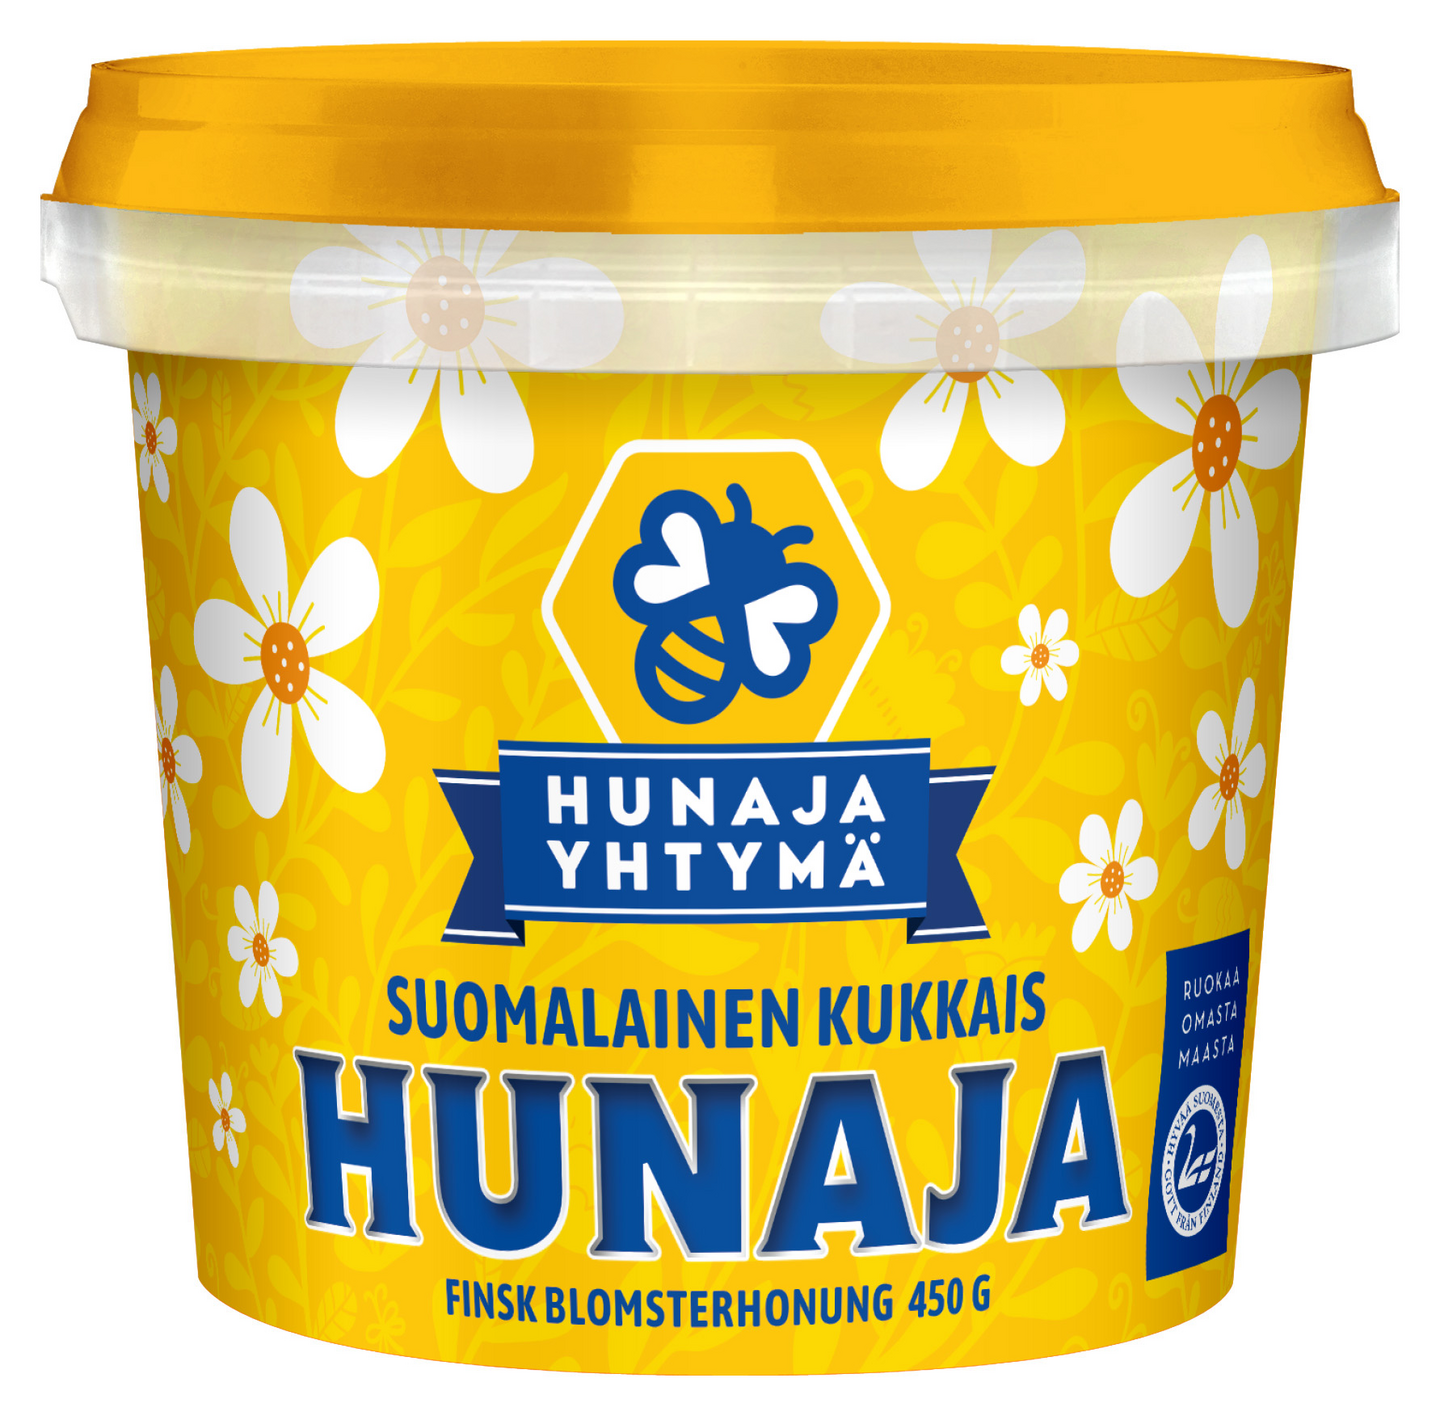 Hunajayhtymä suomalainen kukkaishunaja 450g